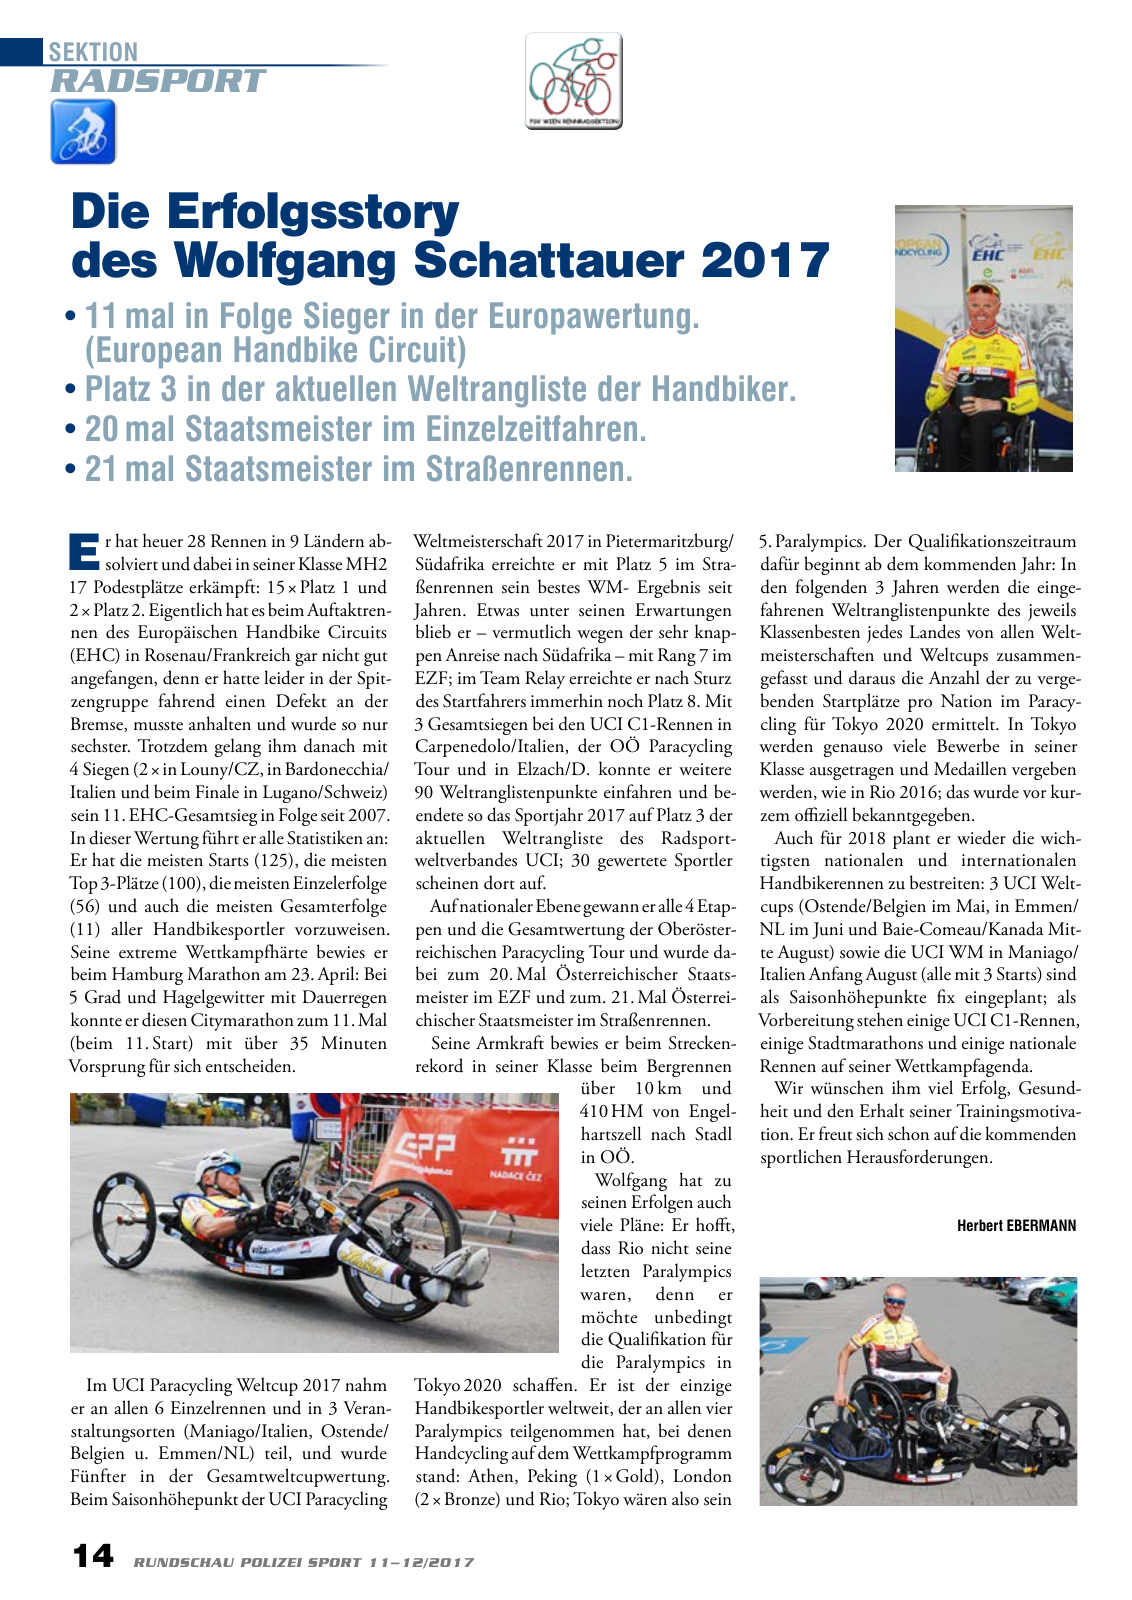 Vorschau Rundschau Polizei Sport 11-12/2017 Seite 14